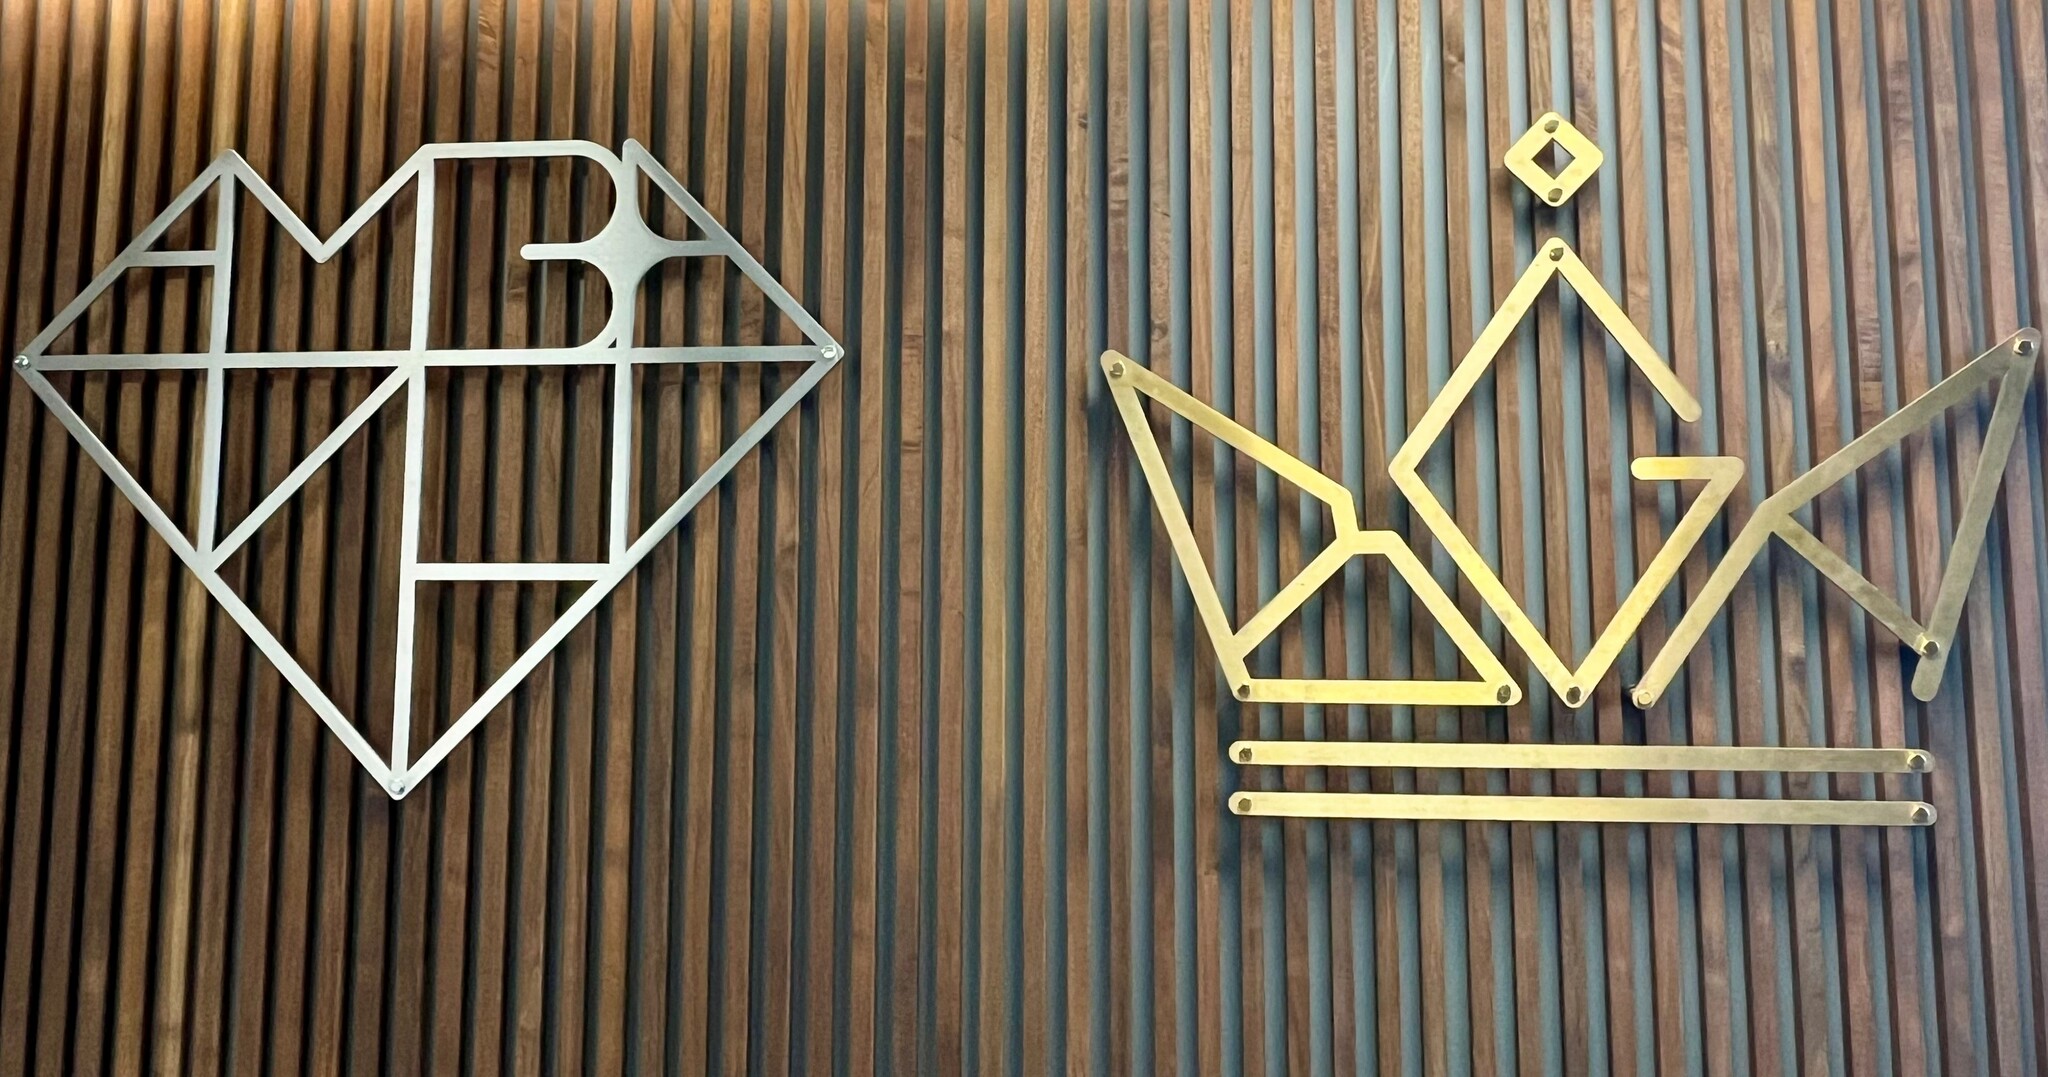 A close-up of the AMBA and BGA logos